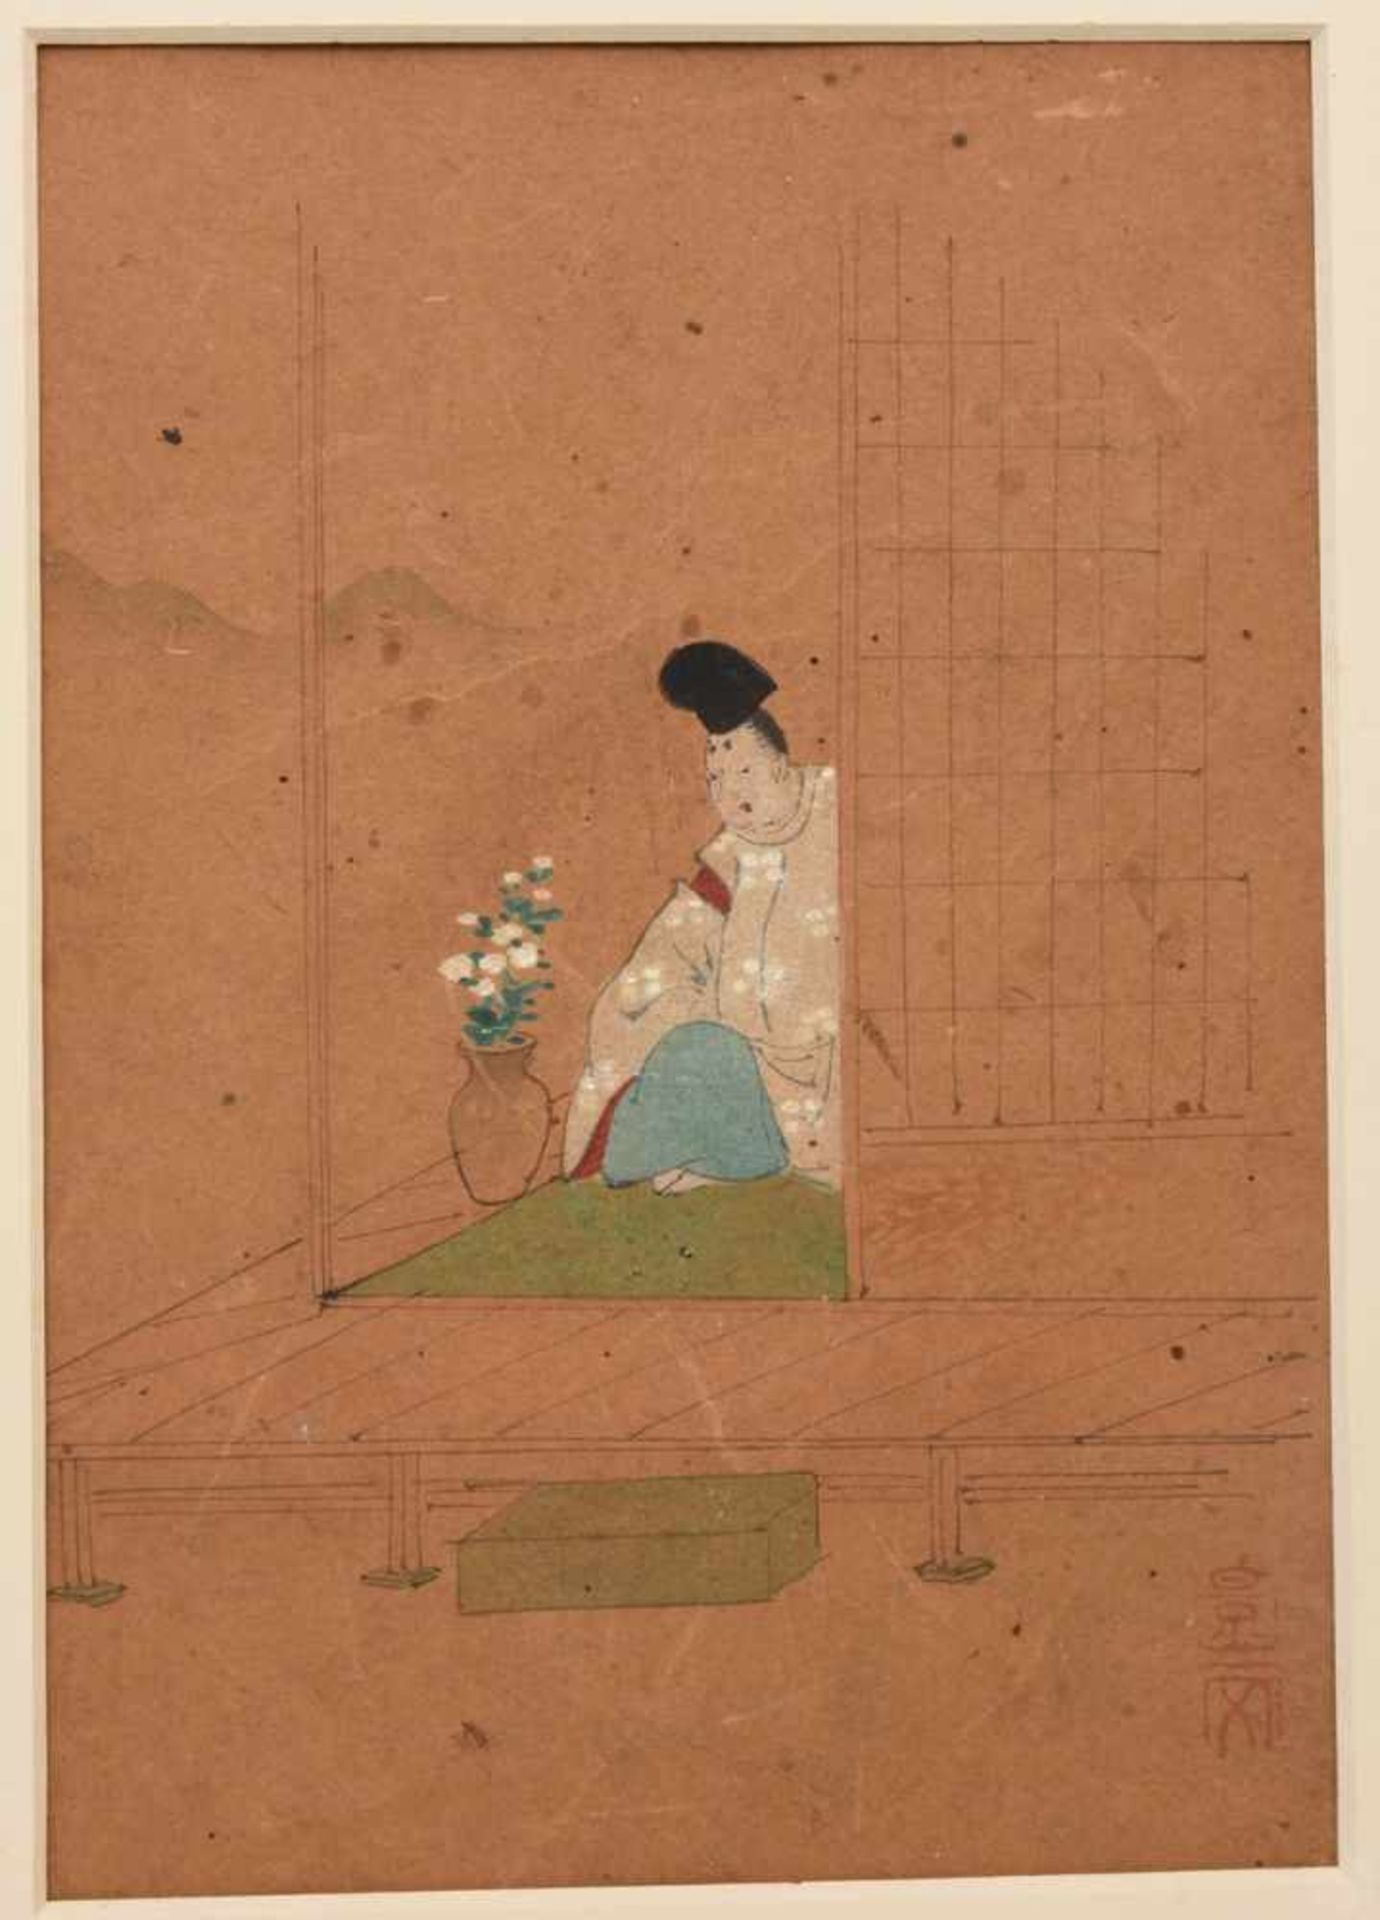 UNBEKANNETR KÜNSTLER, drei Miniaturmalereien, Seidenpapier im Passepartout, Japan, anfang 20.Jh.Zwei - Image 4 of 5